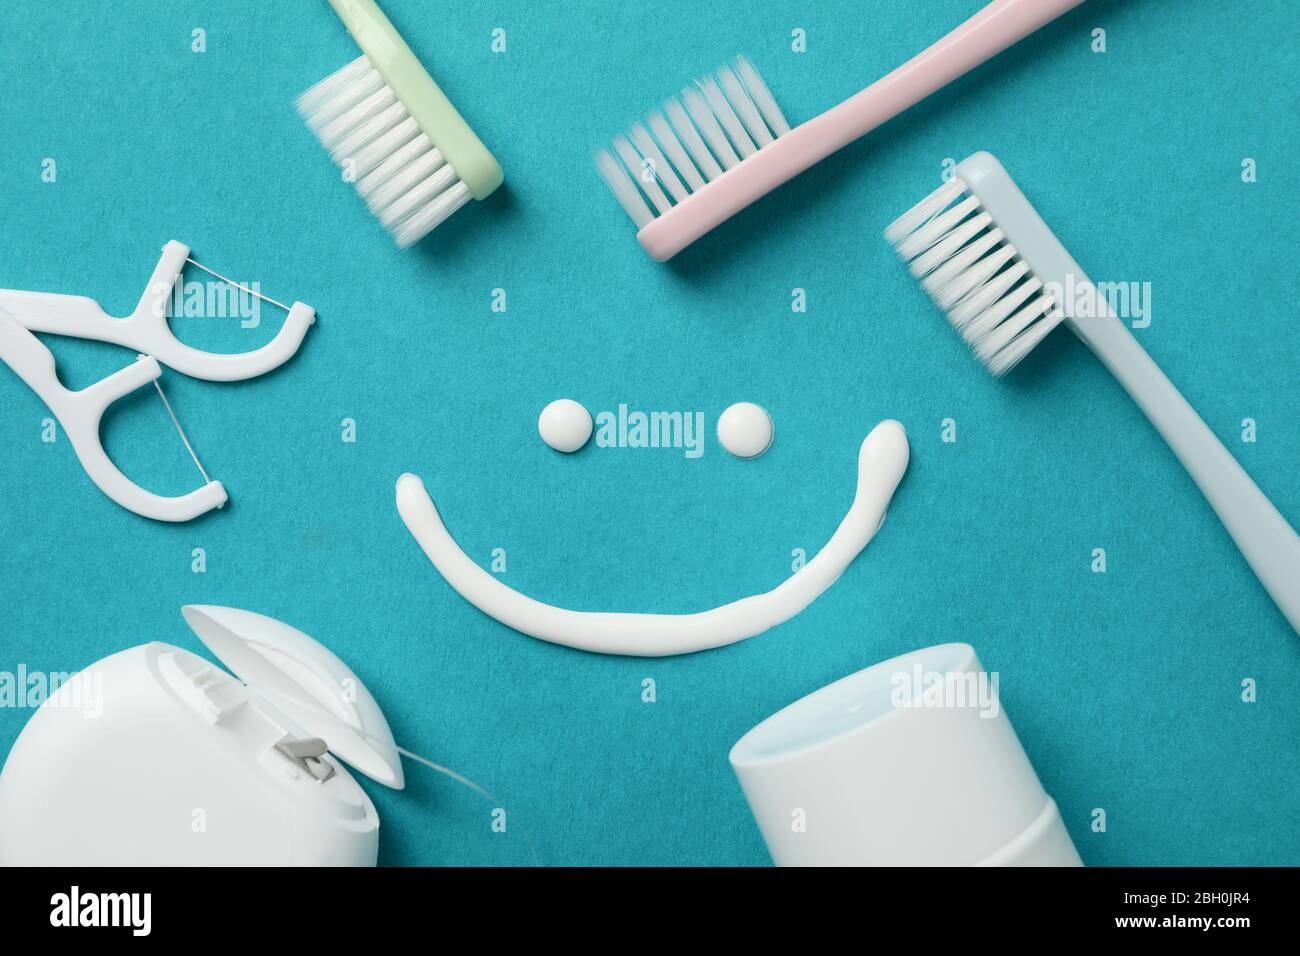 Sorridere e dentale su sfondo turchese, vista dall'alto Foto Stock